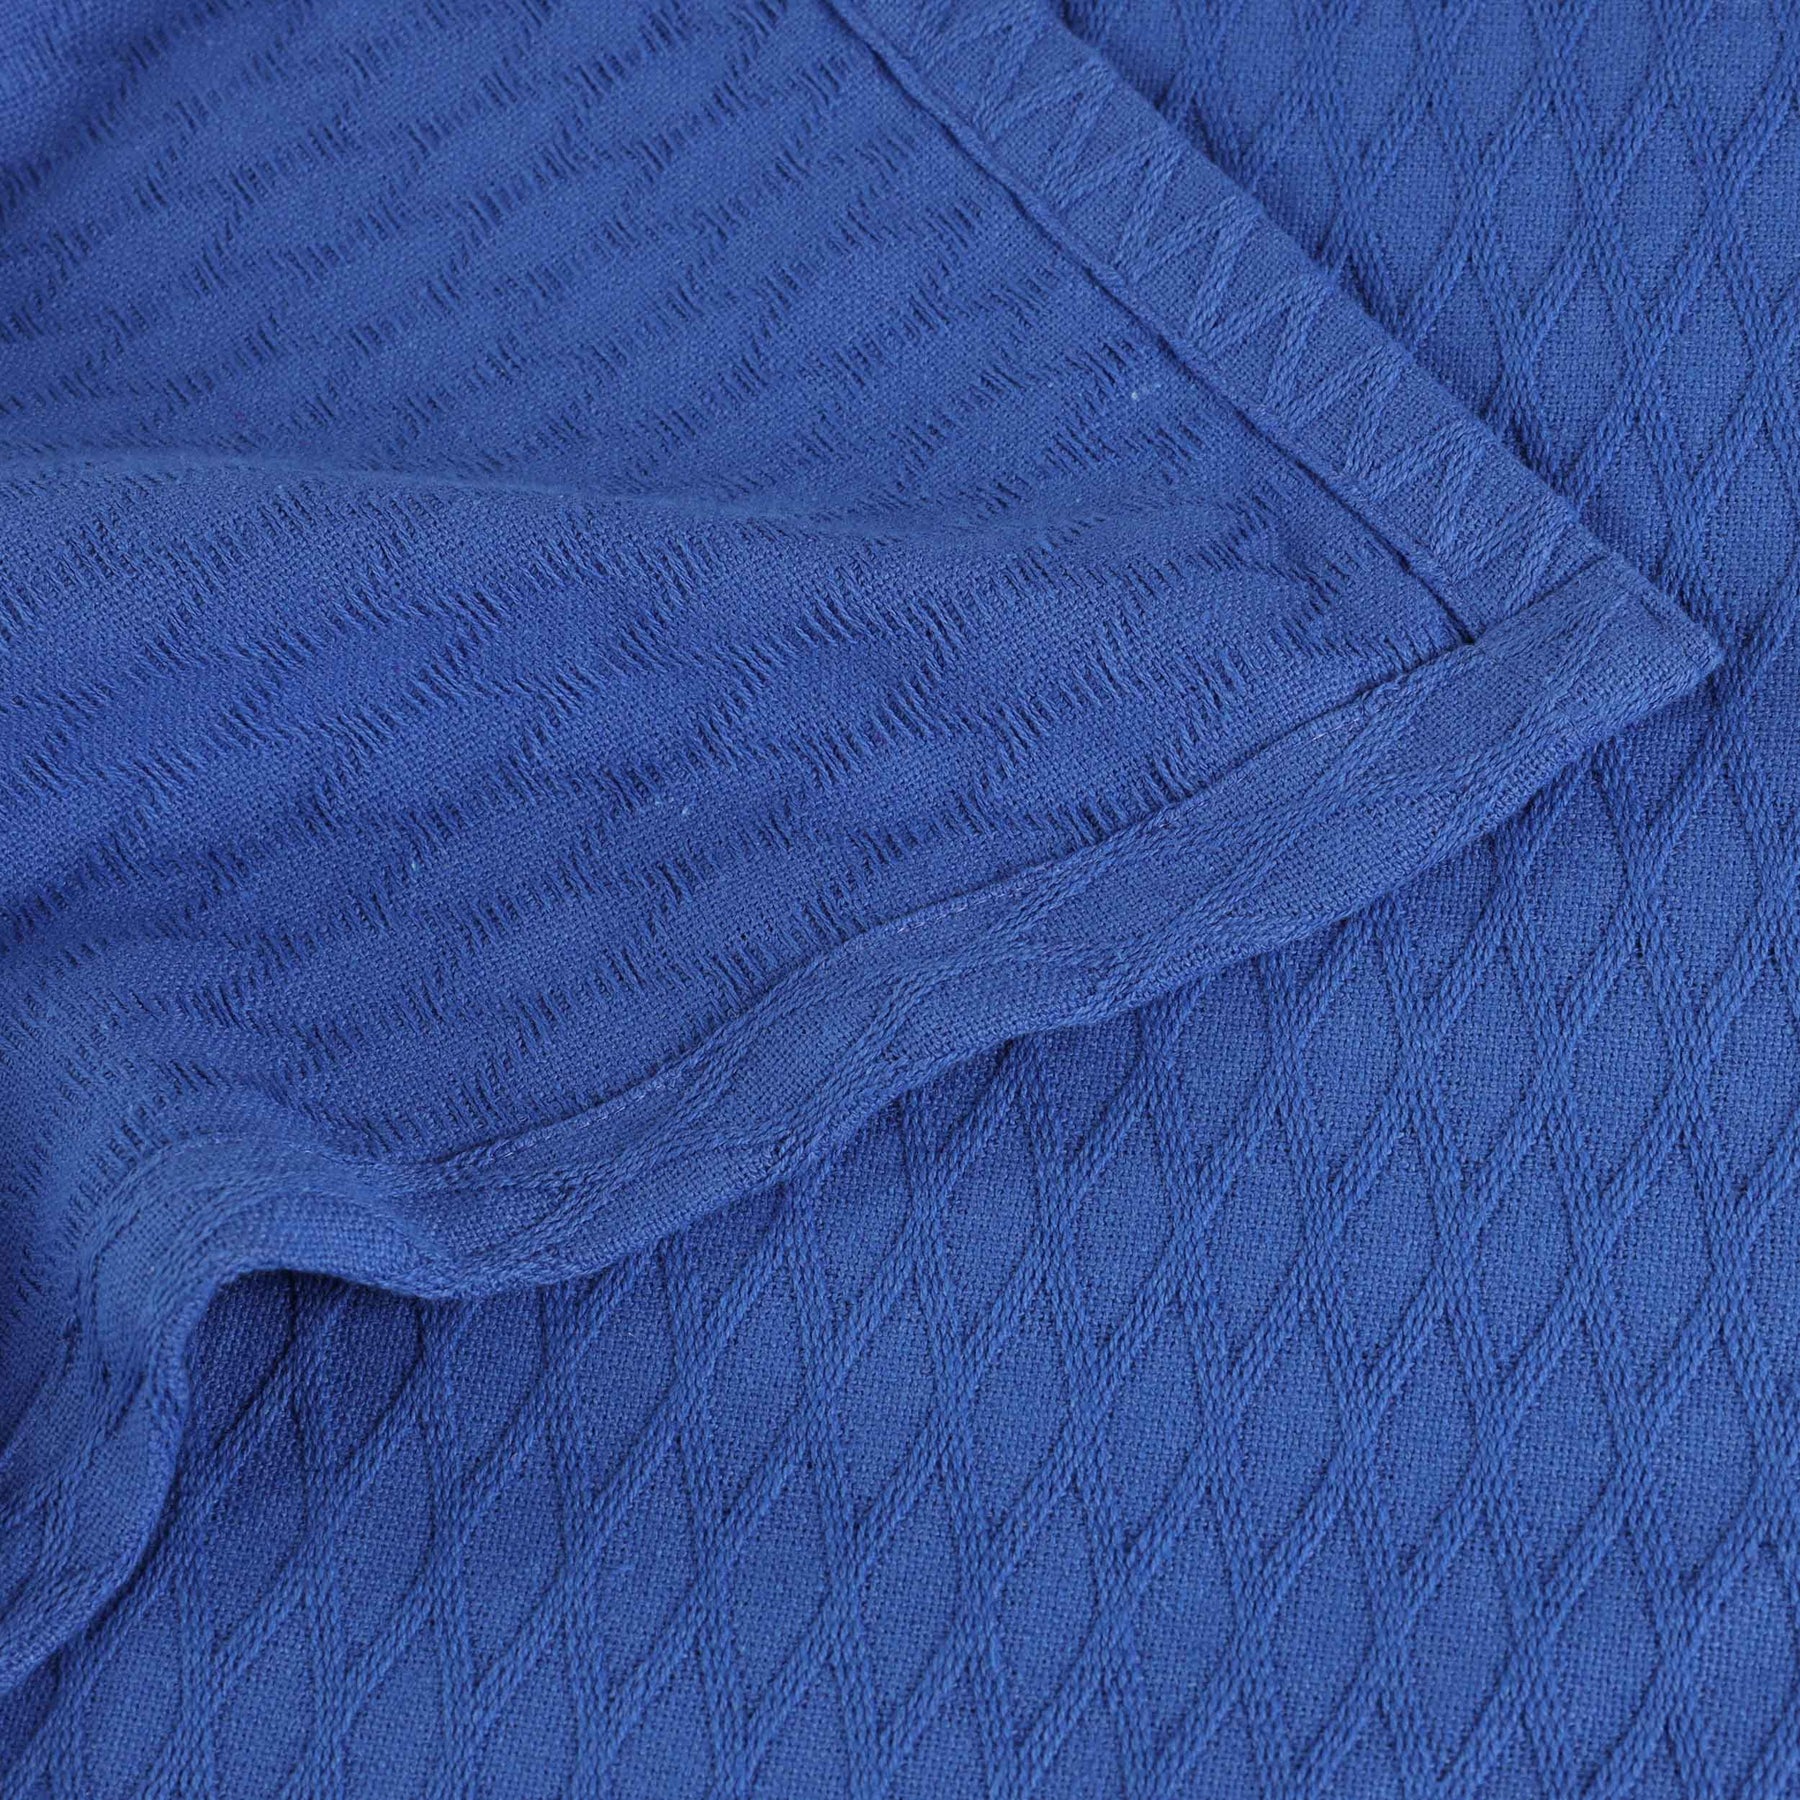 Diamond All-Season Cotton Blanket - Meritt Blue